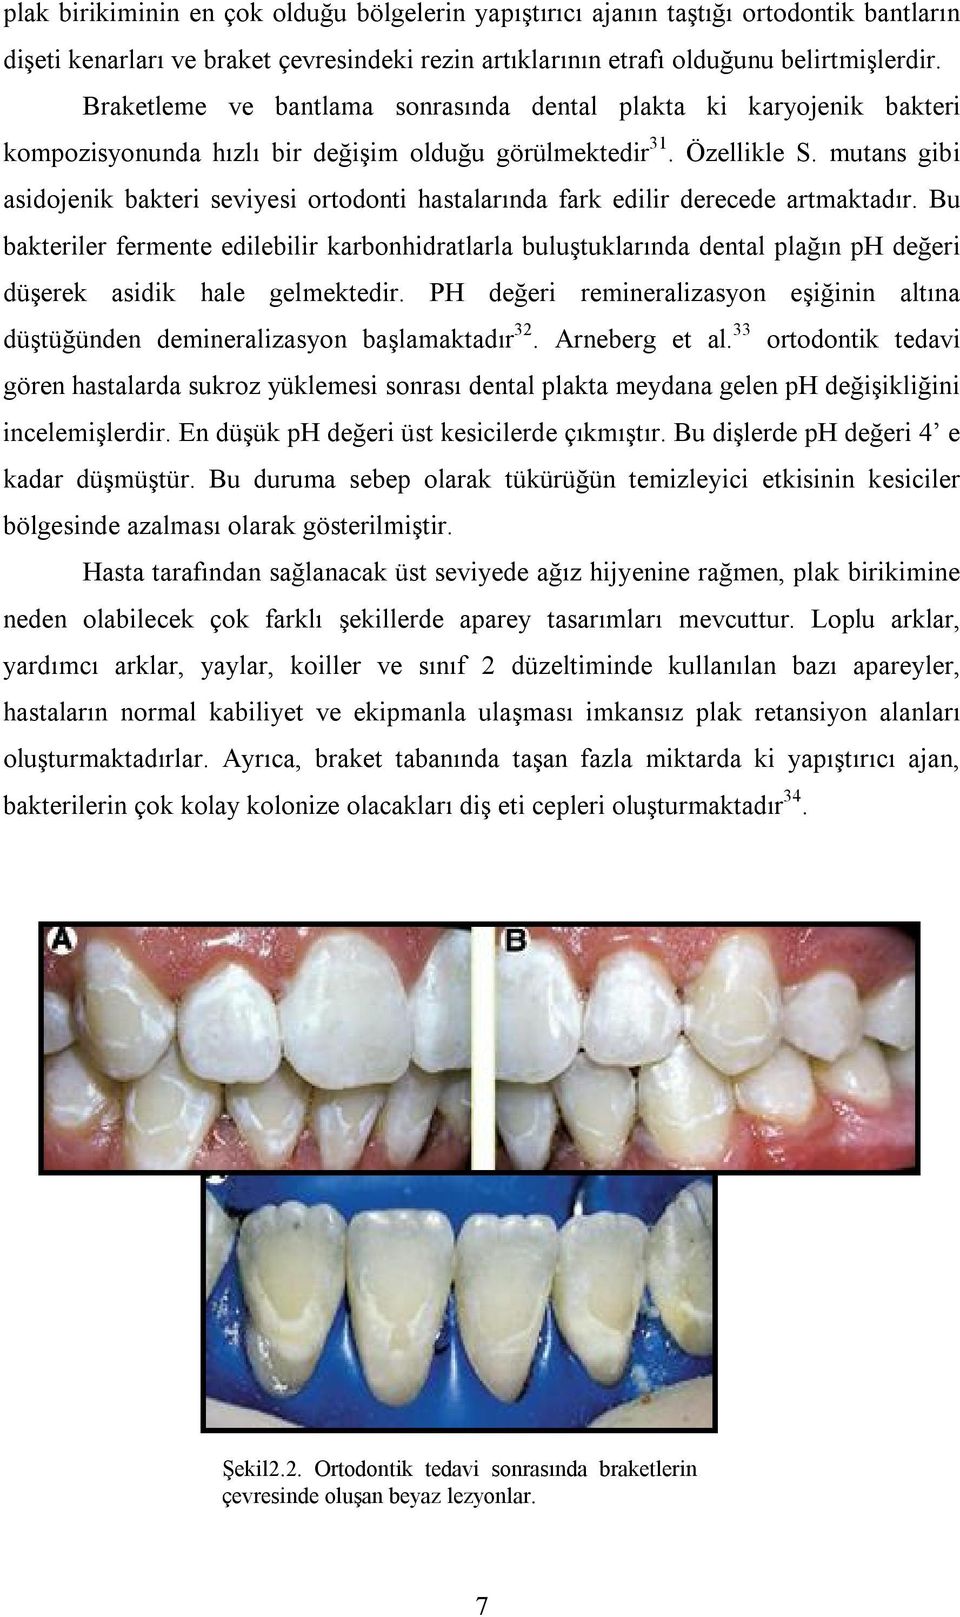 mutans gibi asidojenik bakteri seviyesi ortodonti hastalarında fark edilir derecede artmaktadır.